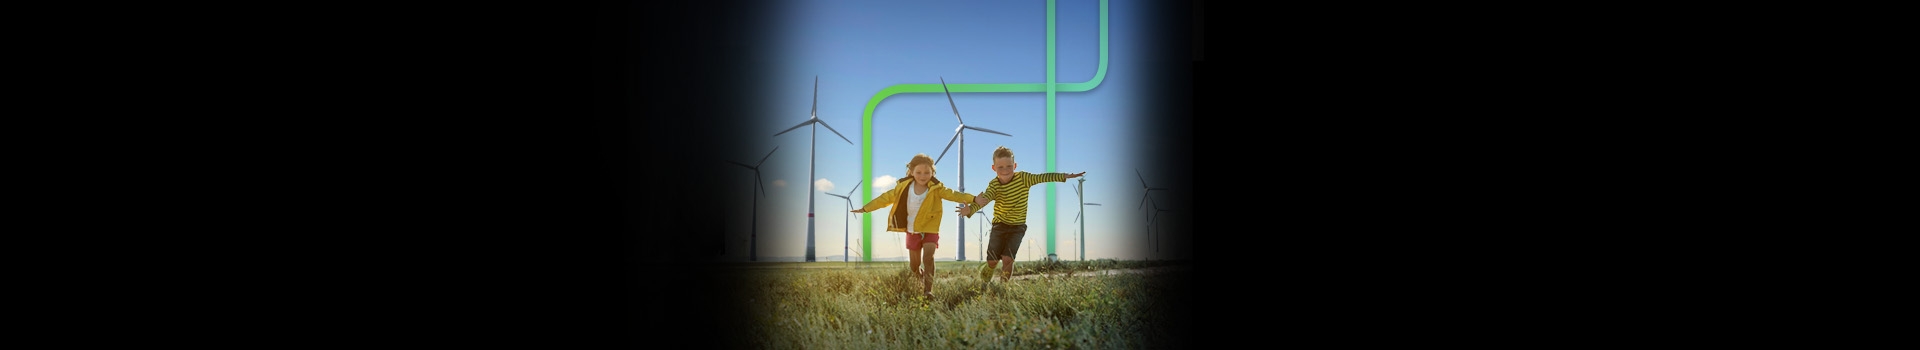 Duas crianças de mãos dadas correndo em um campo de energia eólica